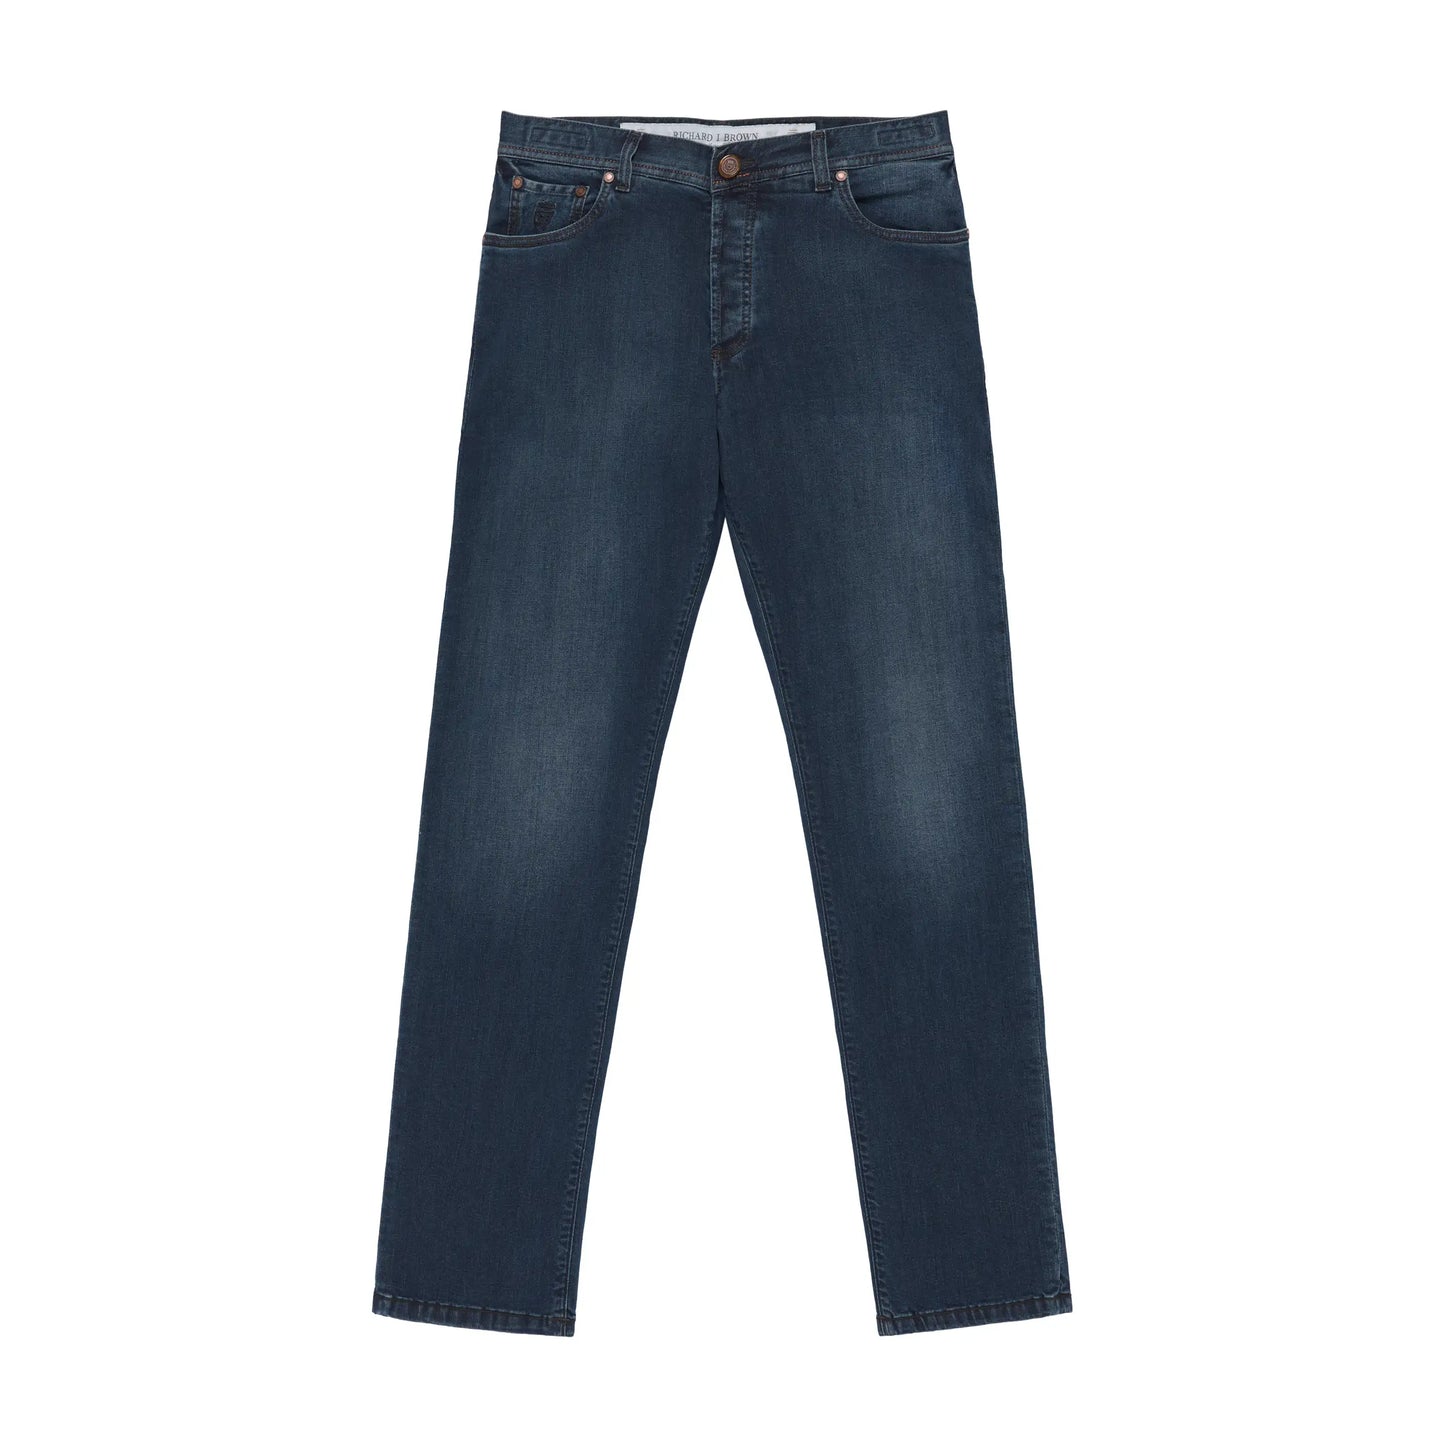 Jeans aus Stretch-Baumwolle in blauem Denim